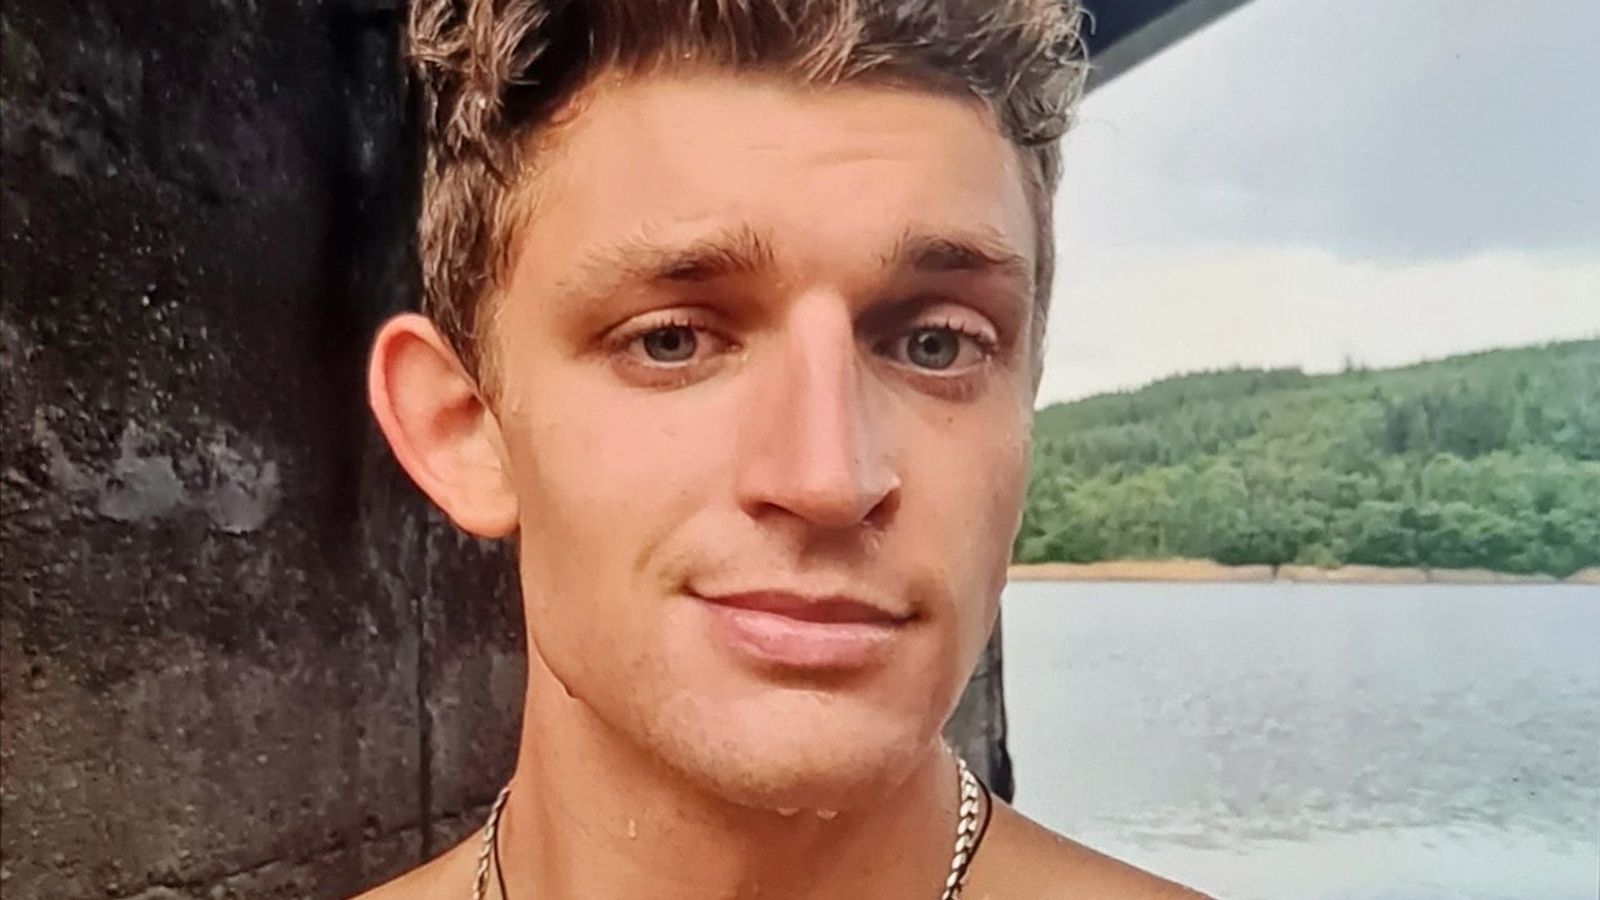 Un homme de 23 ans porté disparu après avoir nagé dans la rivière Mersey |  Nouvelles du Royaume-Uni